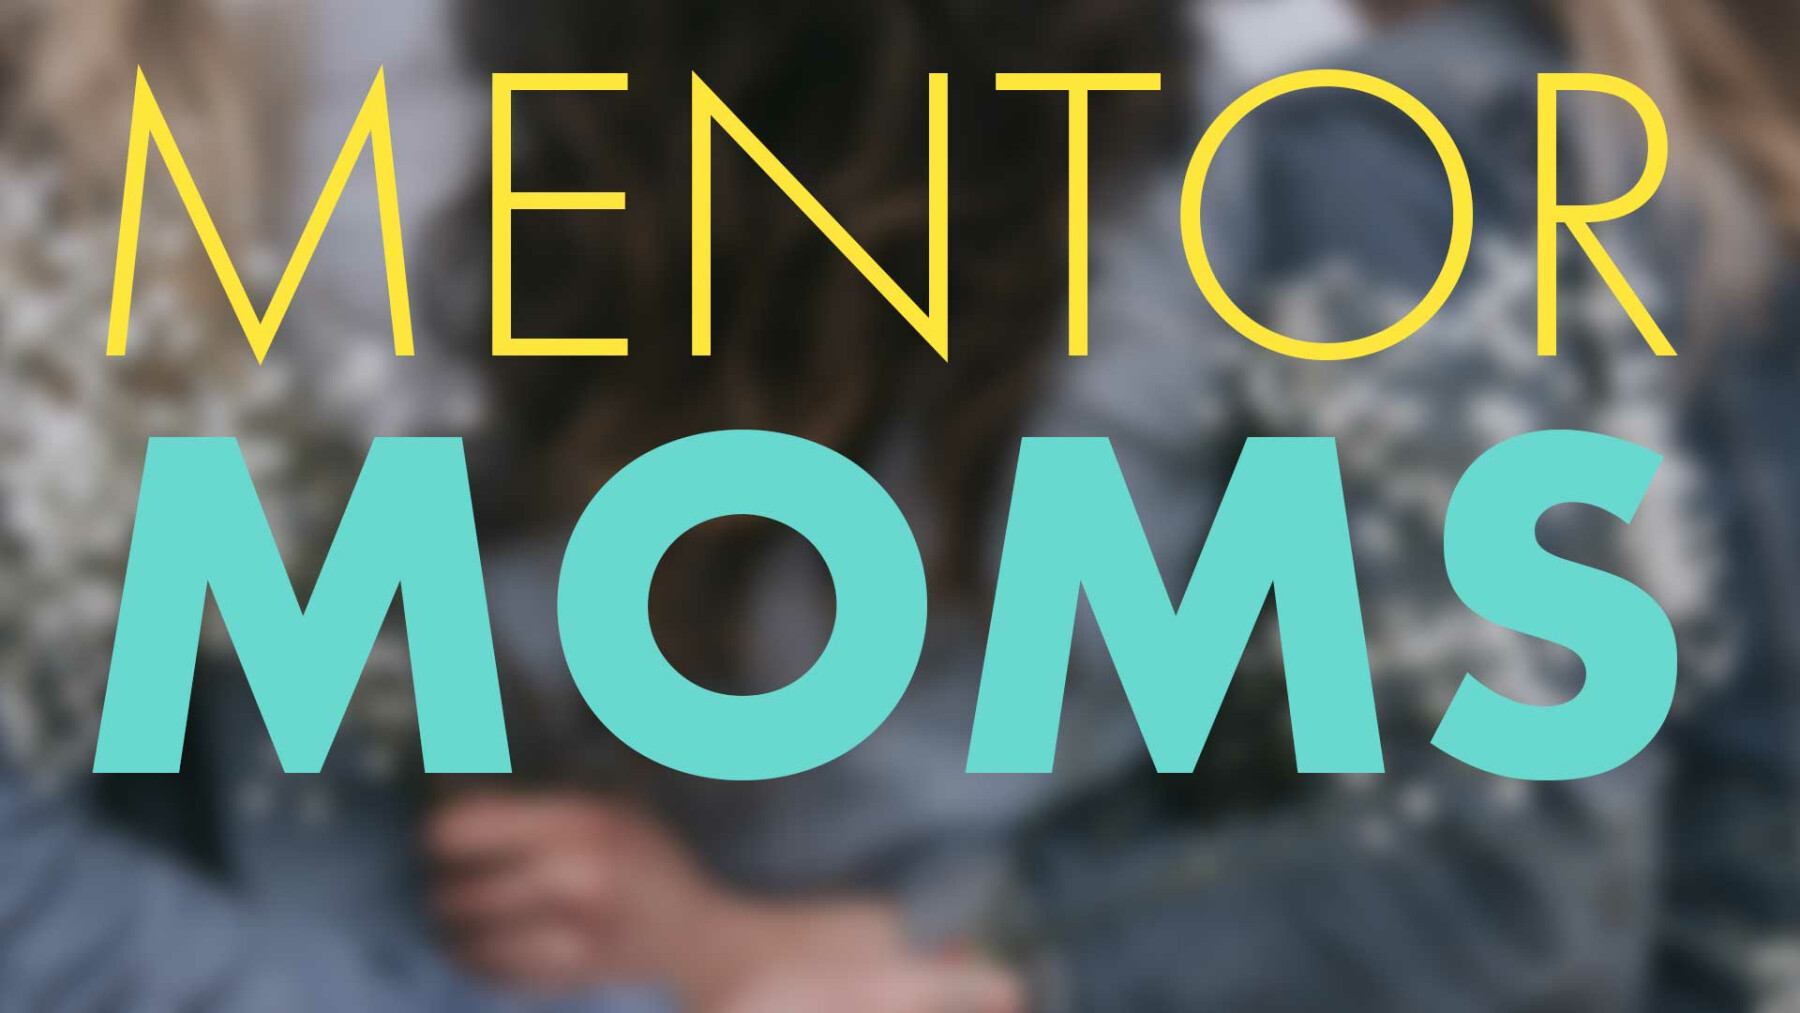 Reminder: MENTOR MOMS - Register Today!